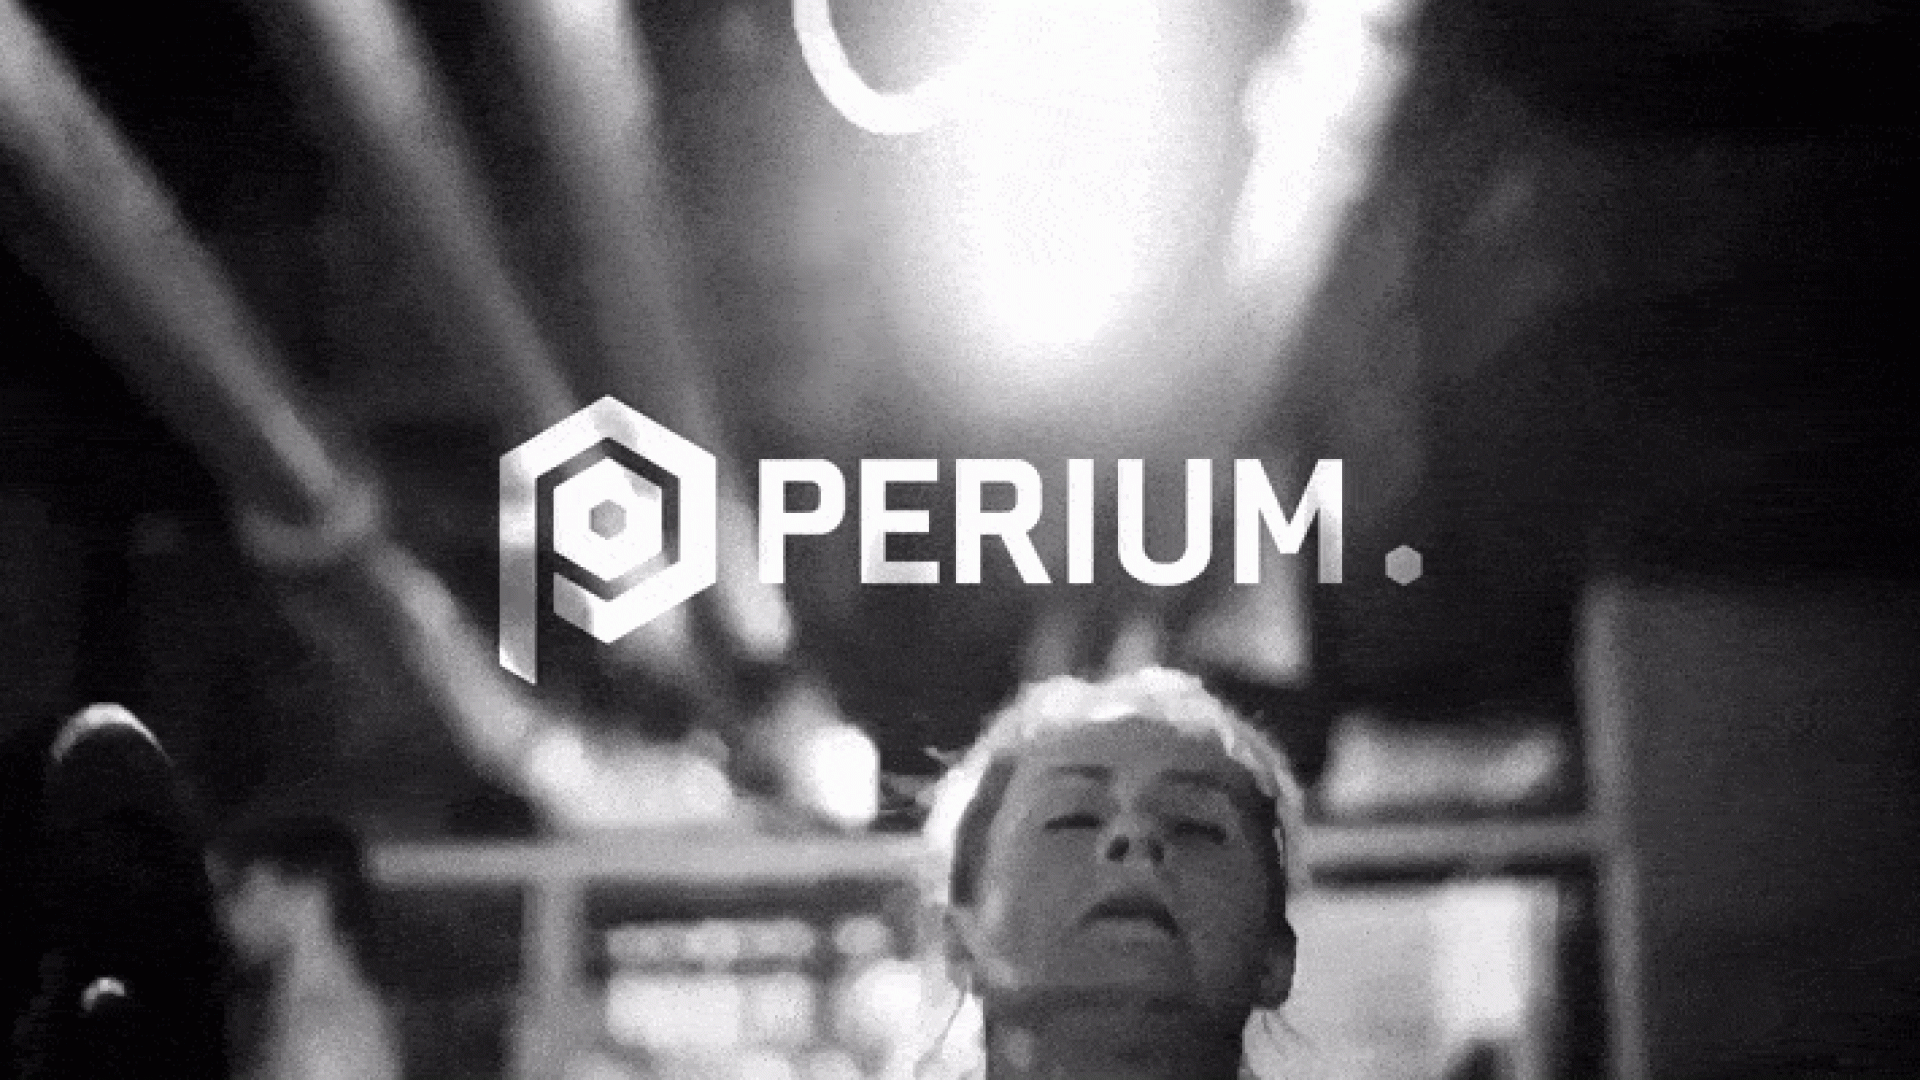 Klinical-Perium